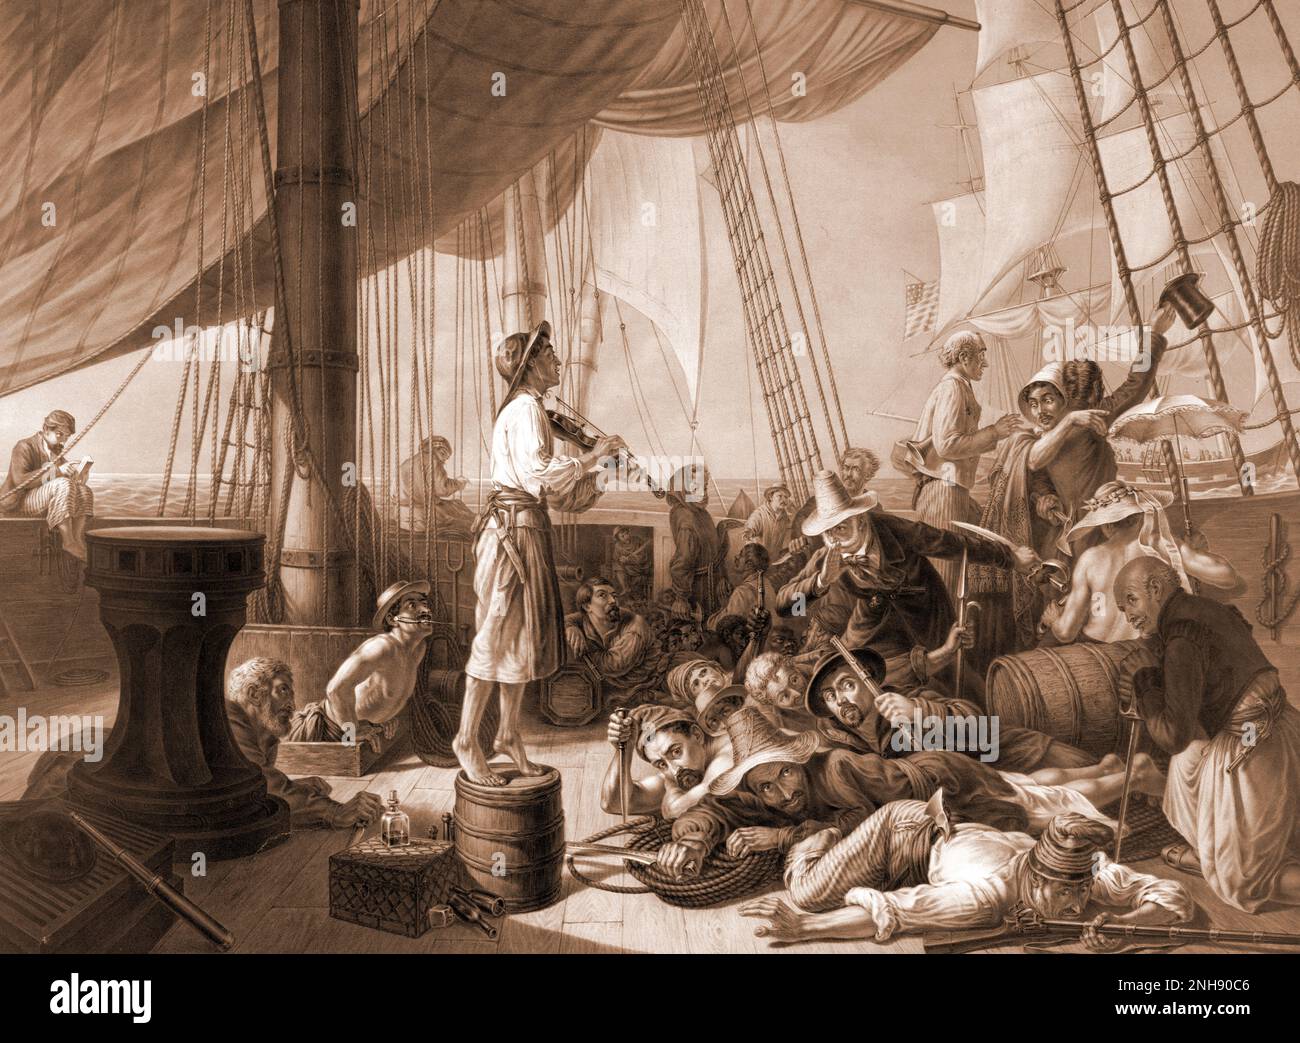 La furia dei pirati. I pirati si lanciano in un mercantile fingendo di essere una nave in difficoltà. Illustrazione dalla carta del ragazzo, 1896. Foto Stock